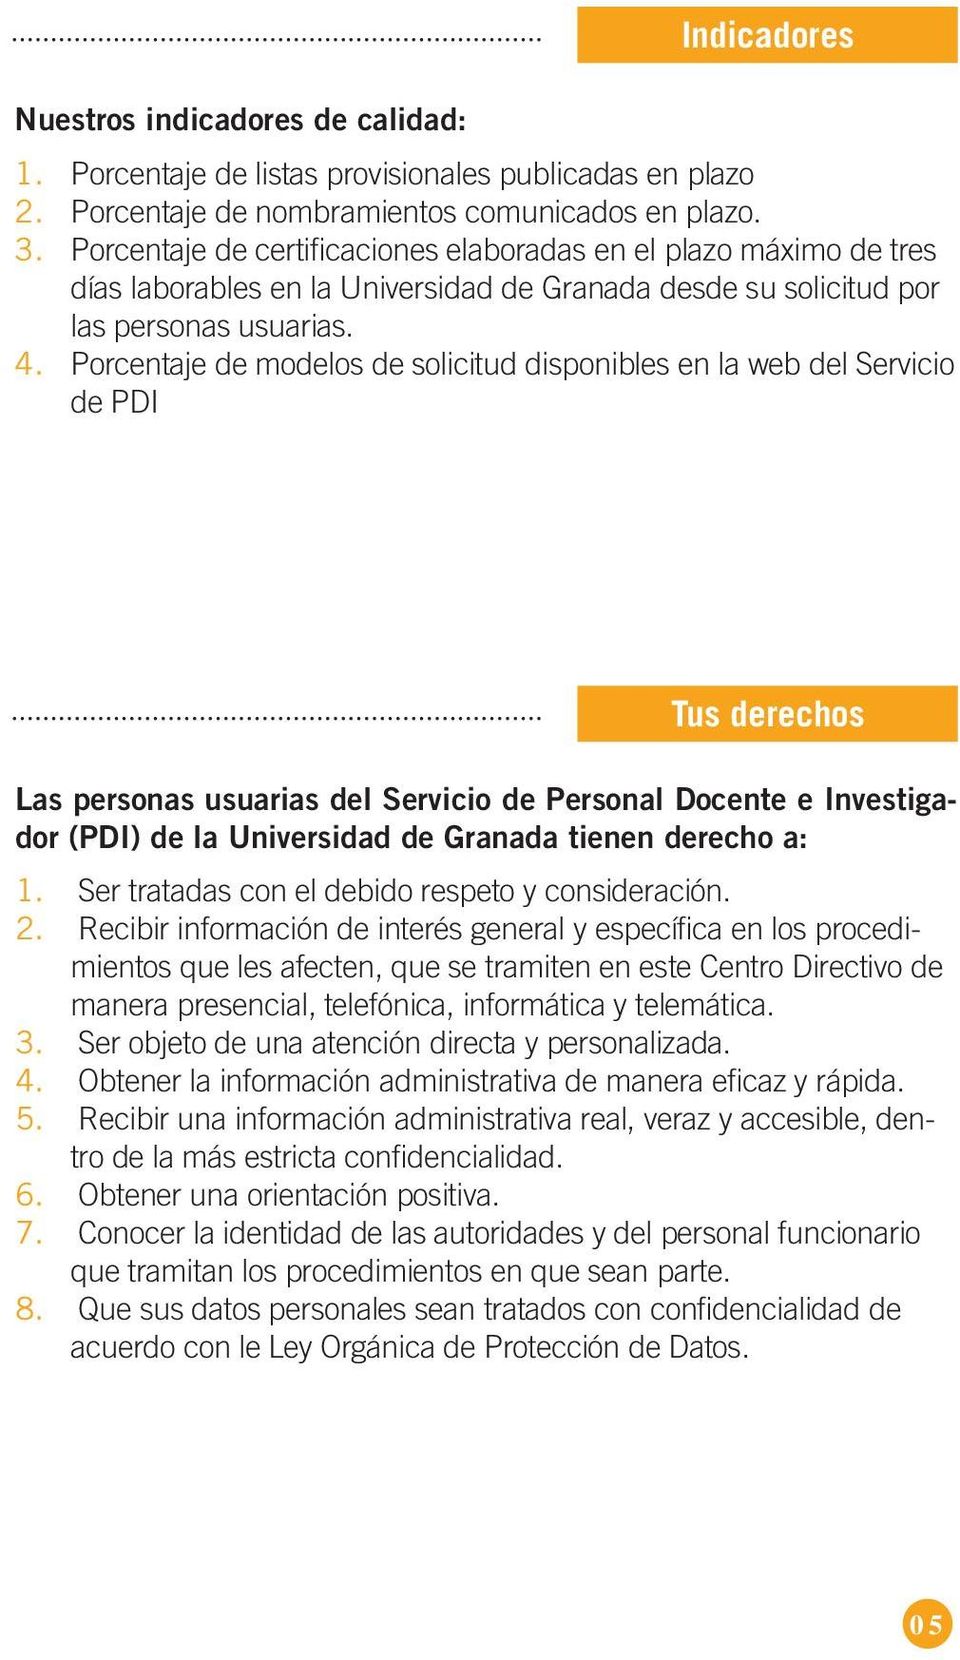 Porcentaje de modelos de solicitud disponibles en la web del Servicio de PDI Tus derechos Las personas usuarias del Servicio de Personal Docente e Investigador (PDI) de la Universidad de Granada